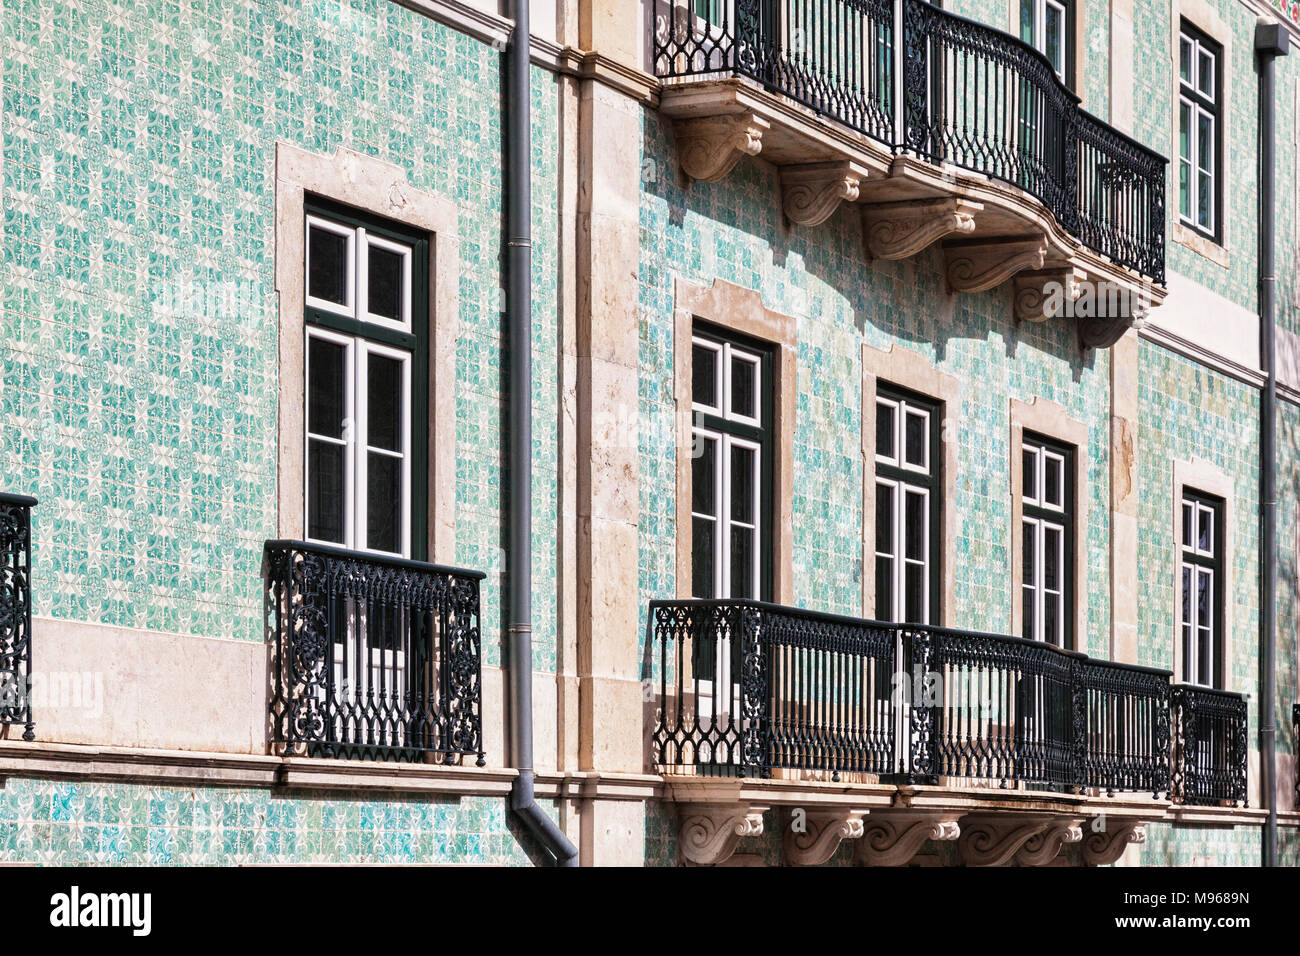 1. März 2018: Lissabon, Portugal - Gebäude in der Altstadt mit typischen keramischen Fliesen- Fassade und schmiedeeisernen Balkonen. Stockfoto